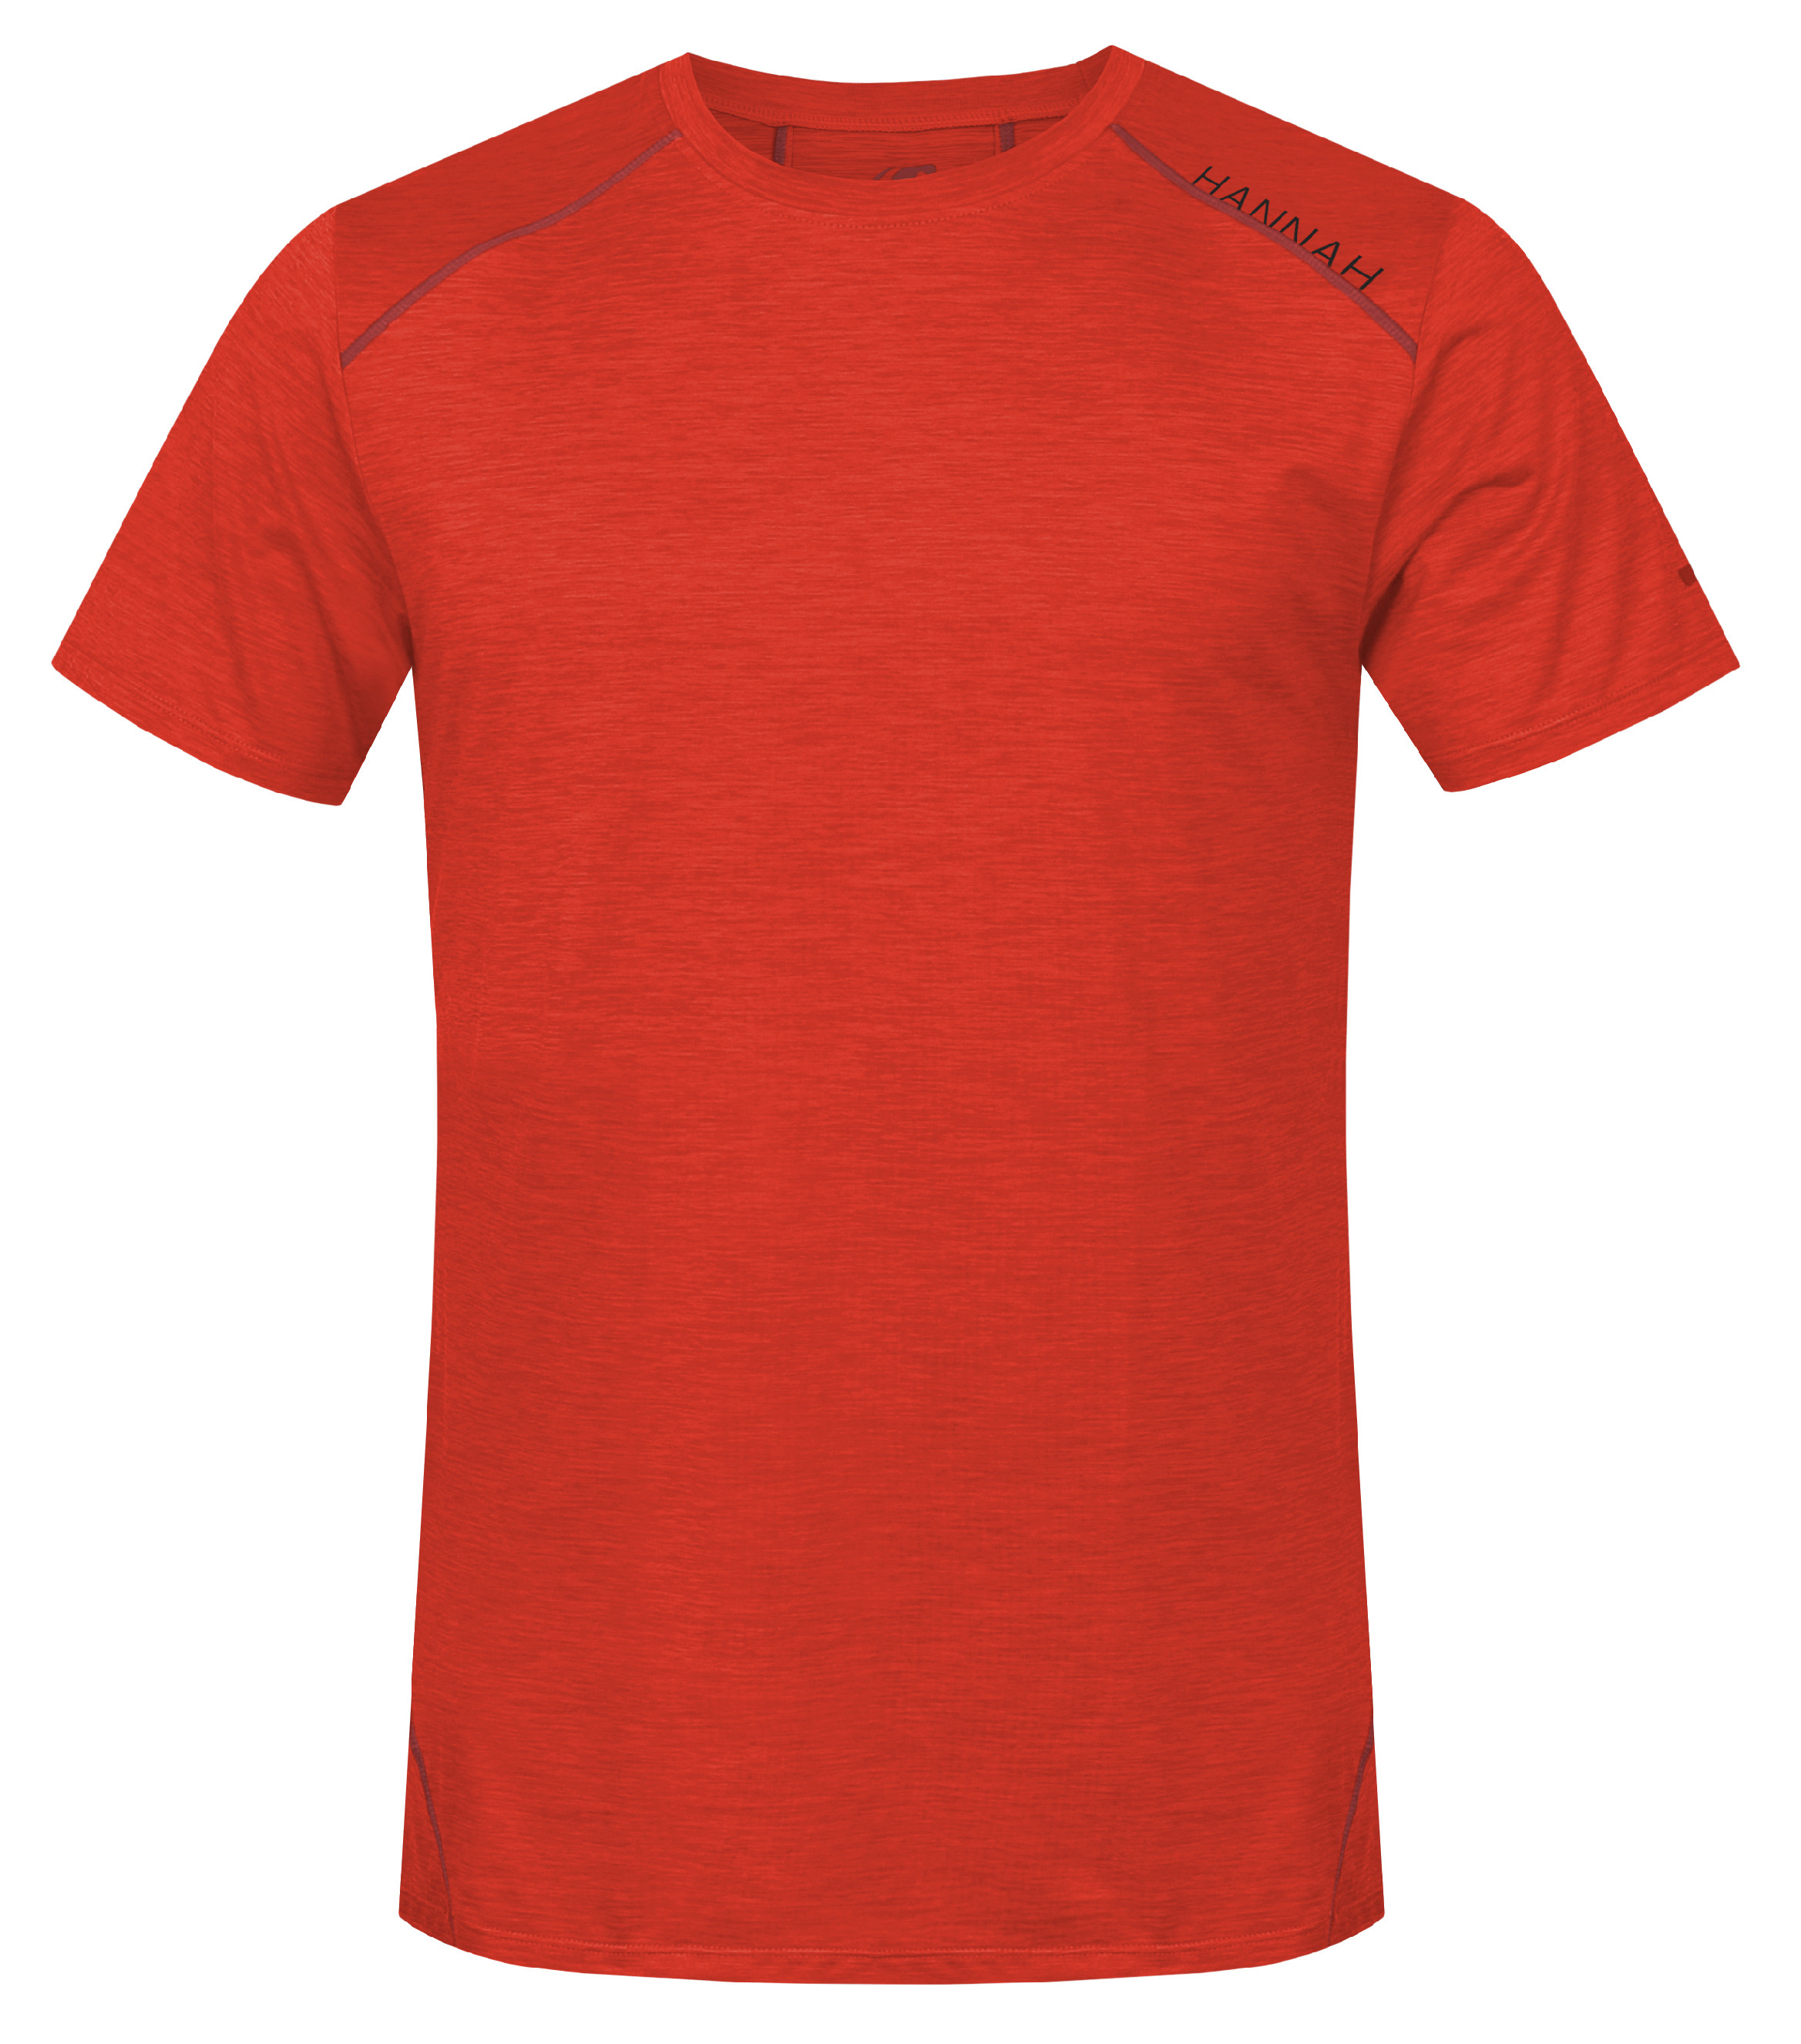 Hannah PELLO II cherry tomato mel Velikost: S pánské tričko s krátkým rukávem